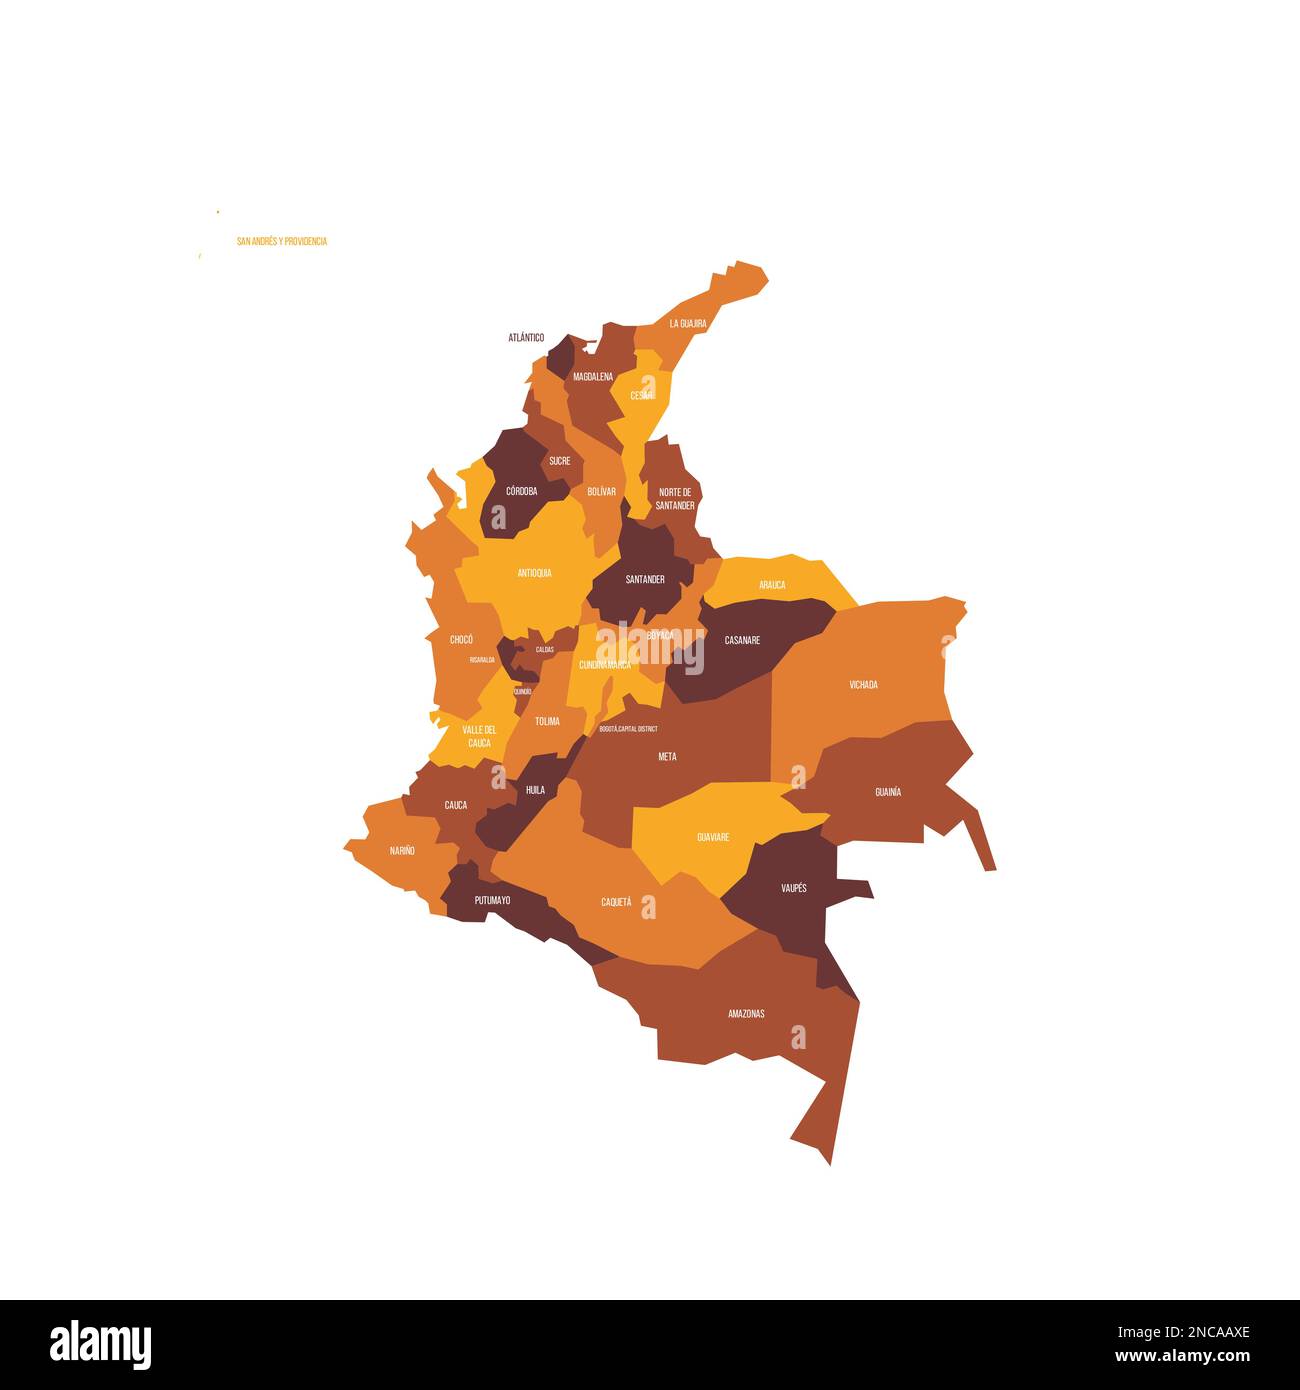 Colombia mappa politica delle divisioni amministrative - dipartimenti e distretto della capitale. Mappa vettoriale piatta con etichette dei nomi. Schema colore marrone - arancione. Illustrazione Vettoriale